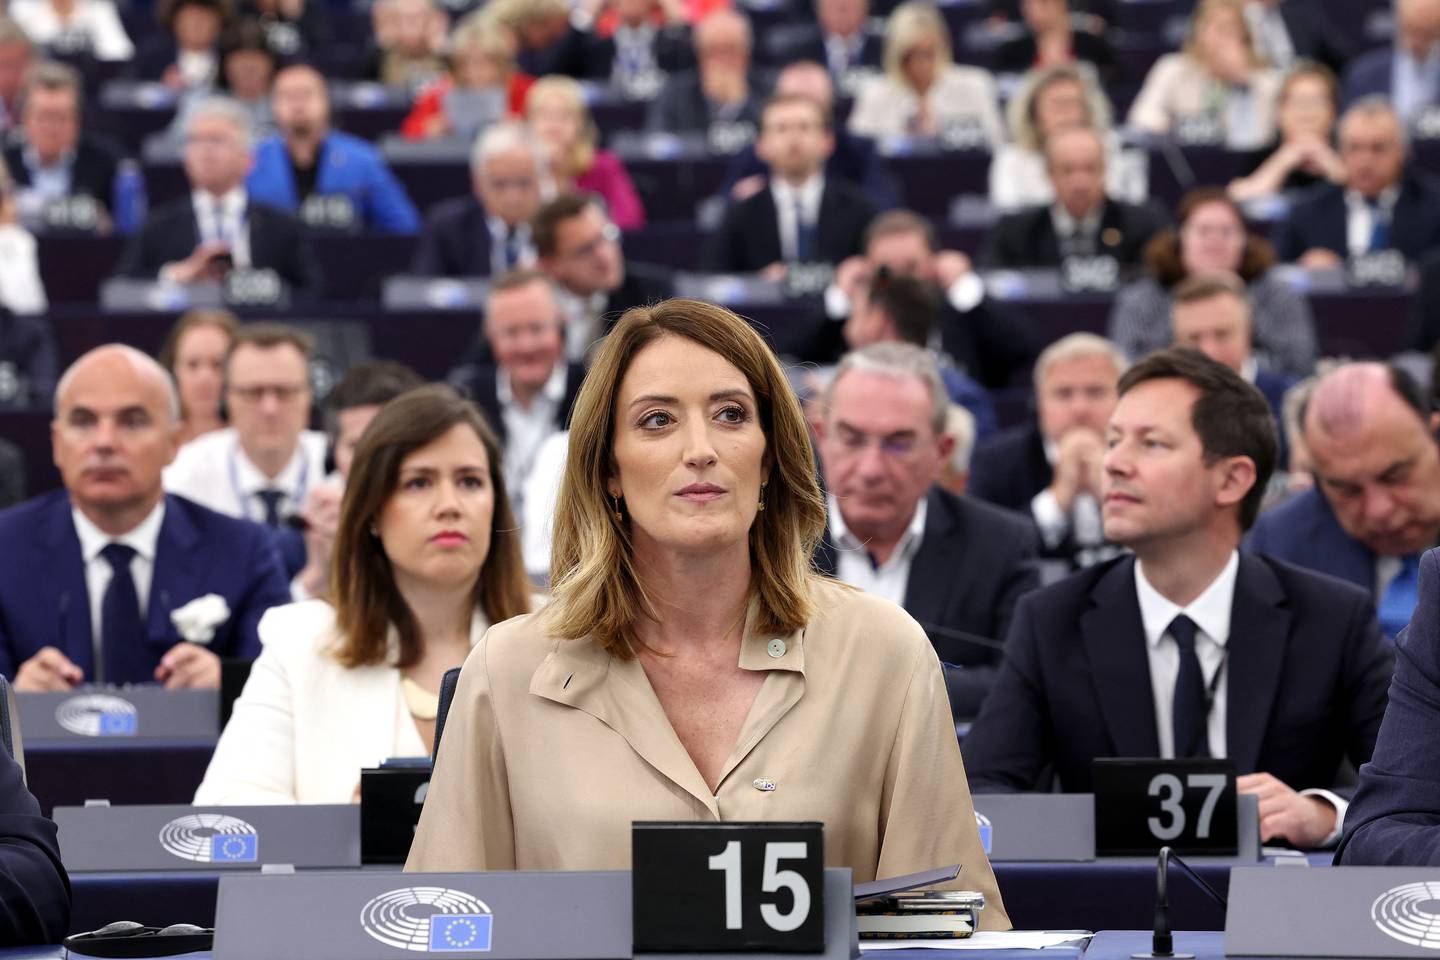 La presidenta del Parlamento Europeo, Roberta Metsola, observa mientras participa en una sesión de votación para elegir al nuevo presidente del Parlamento Europeo durante la primera sesión plenaria de la recién elegida Asamblea Europea en Estrasburgo